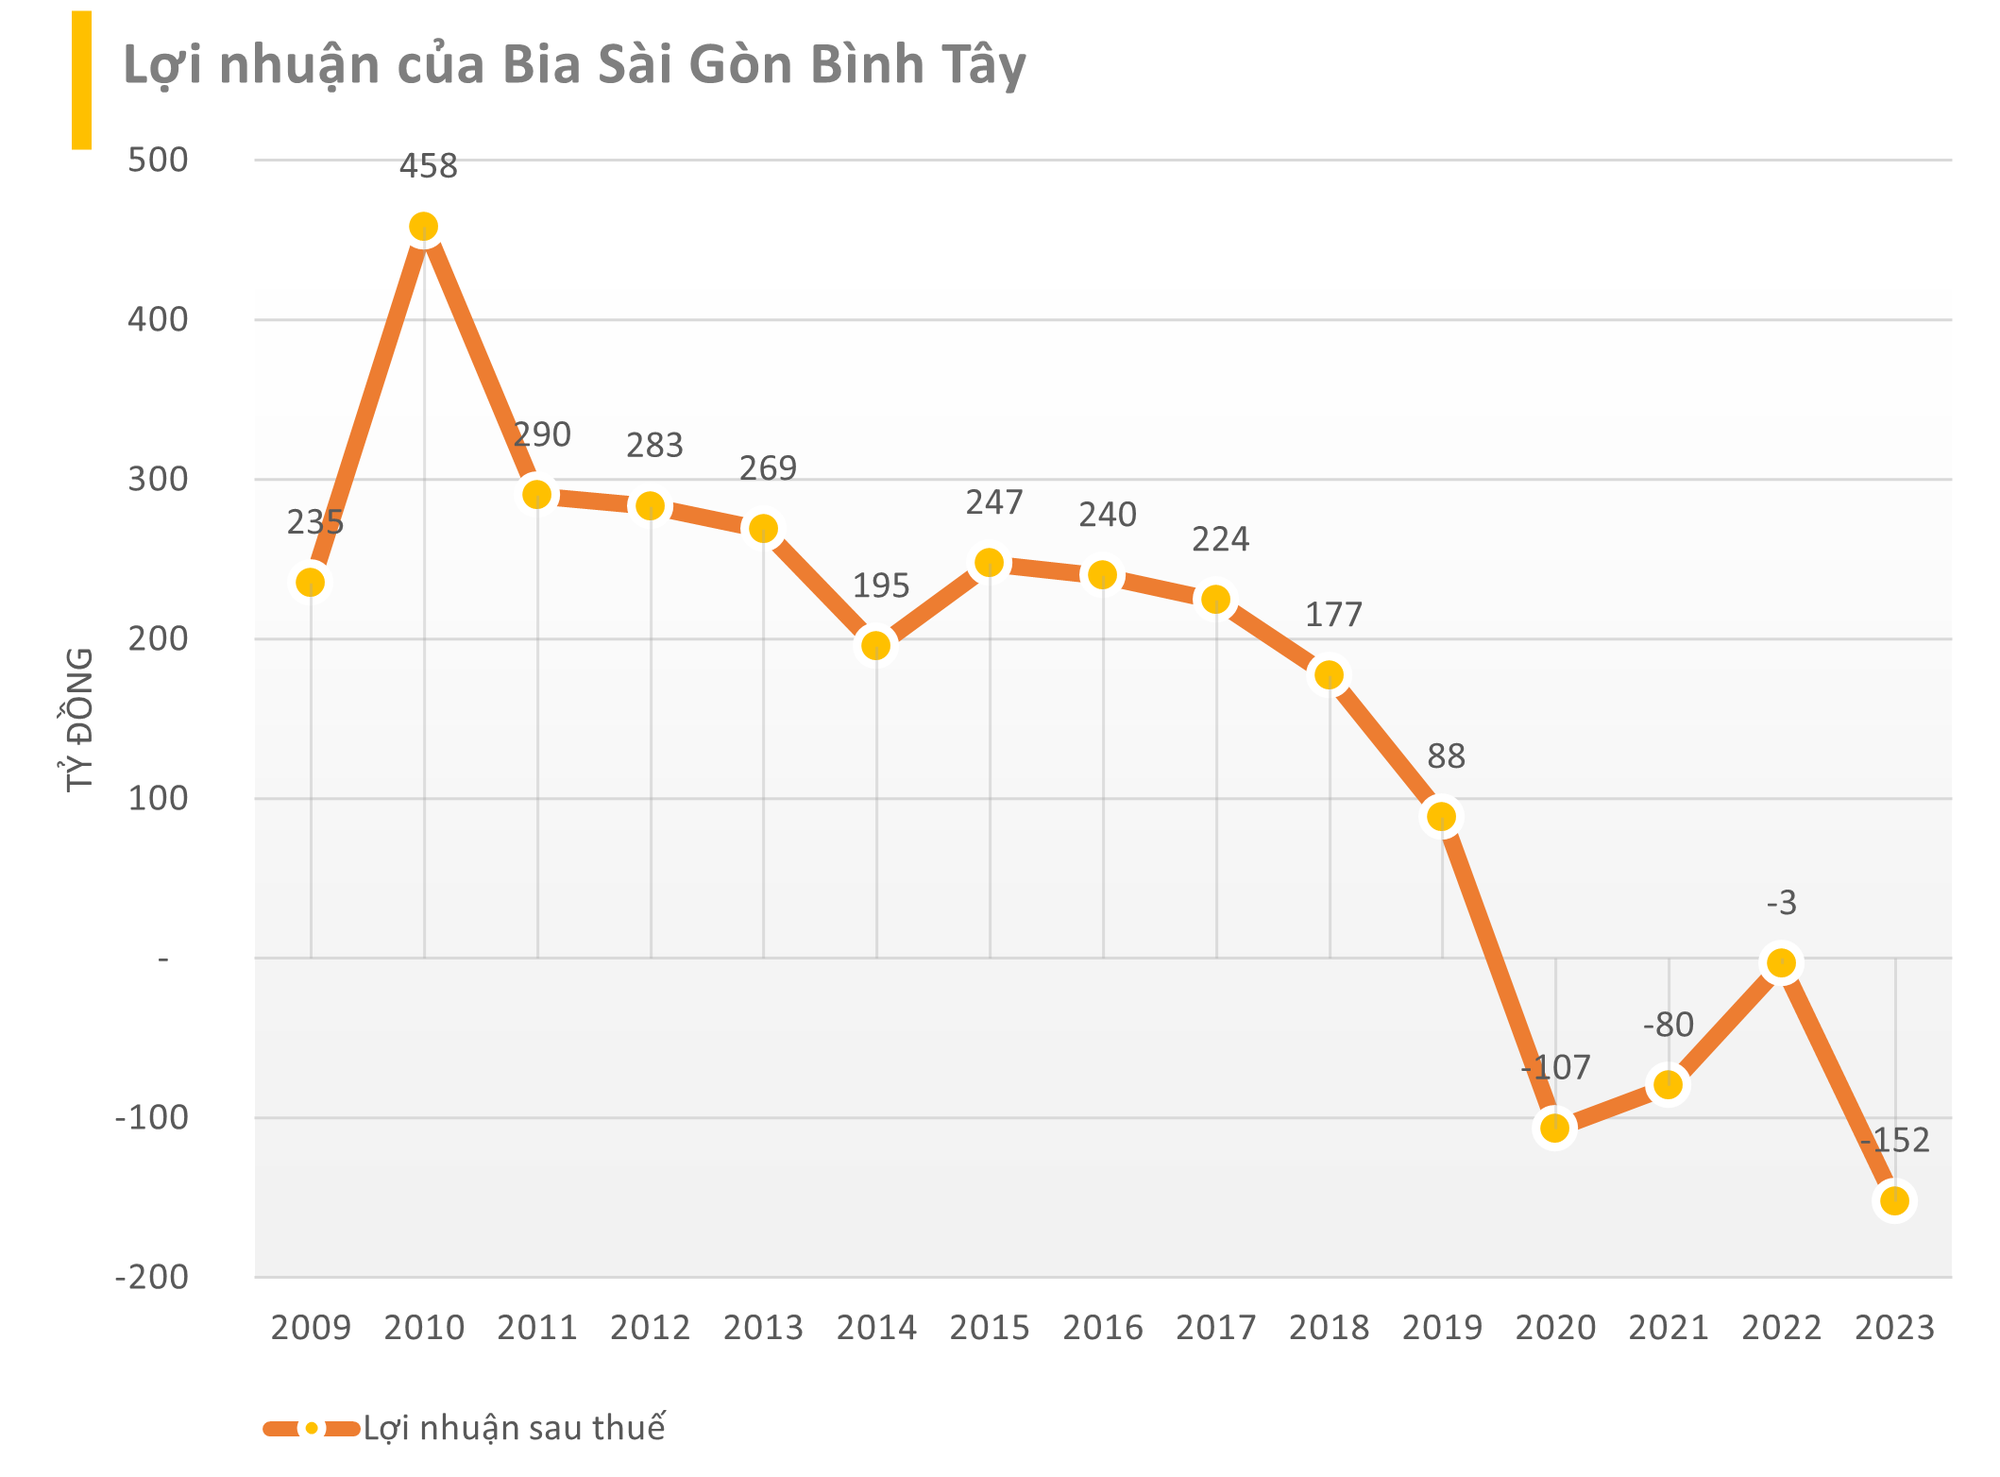 Cú đấm của 'thổi nồng độ cồn': DN bán bia không cồn báo lỗ năm thứ 4 liên tiếp khi 80% doanh thu đến từ sản xuất bia Sài Gòn cho Sabeco - Ảnh 1.